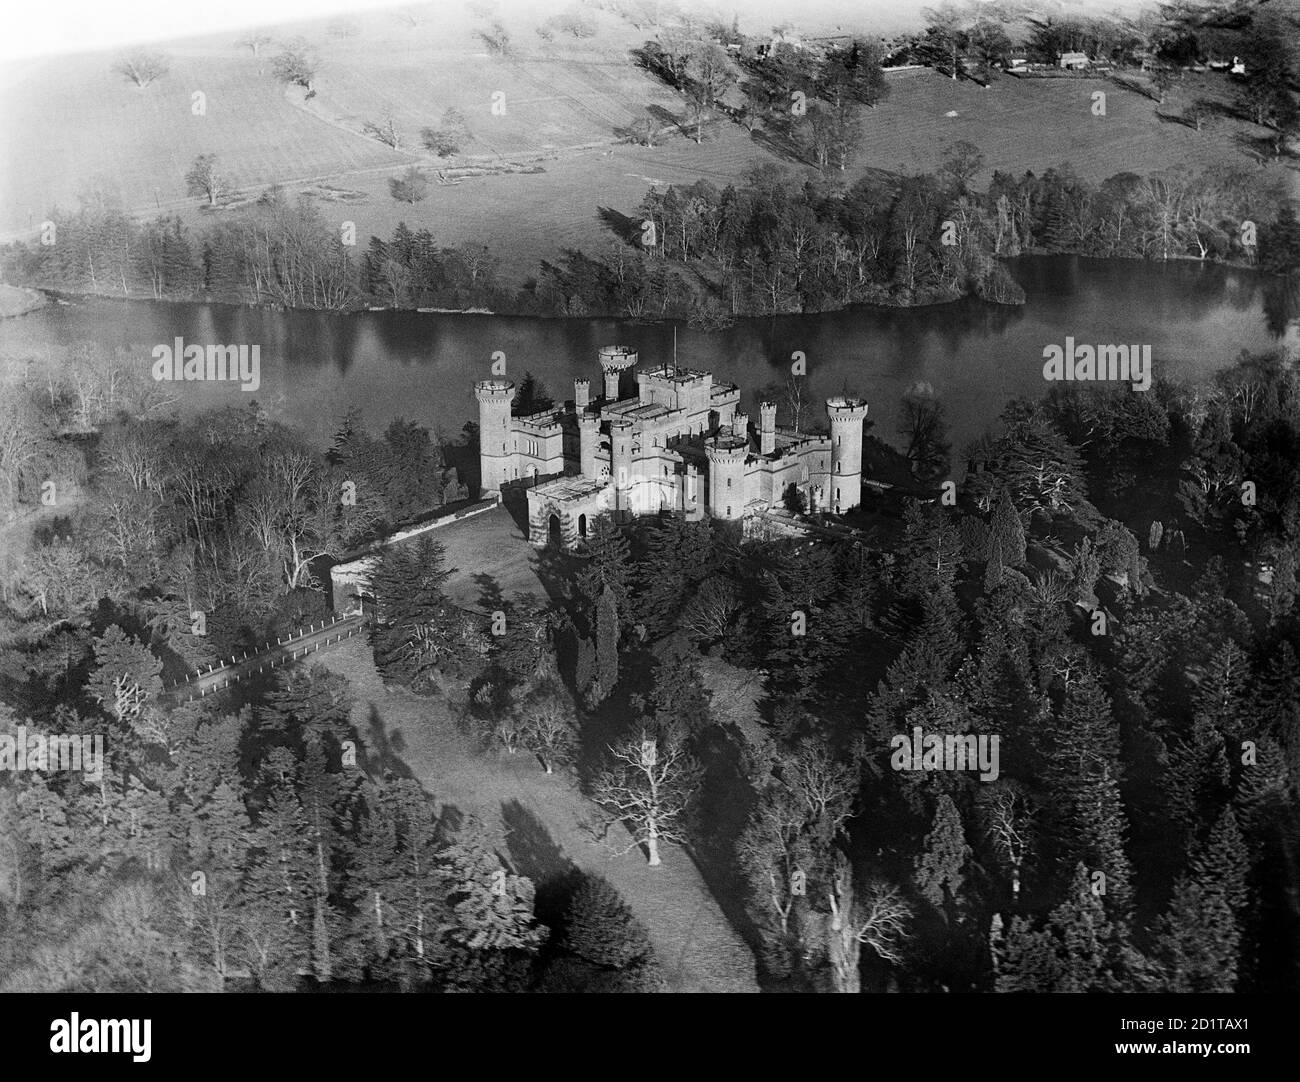 EASTNOR CASTLE, in der Nähe von Ledbury, Herefordshire. Luftaufnahme von Eastnor Castle, erbaut 1812-20 von Robert Smirke, um wie eine mittelalterliche Burg aussehen. Fotografiert im März 1921. Aerofilms Collection (siehe Links). Stockfoto